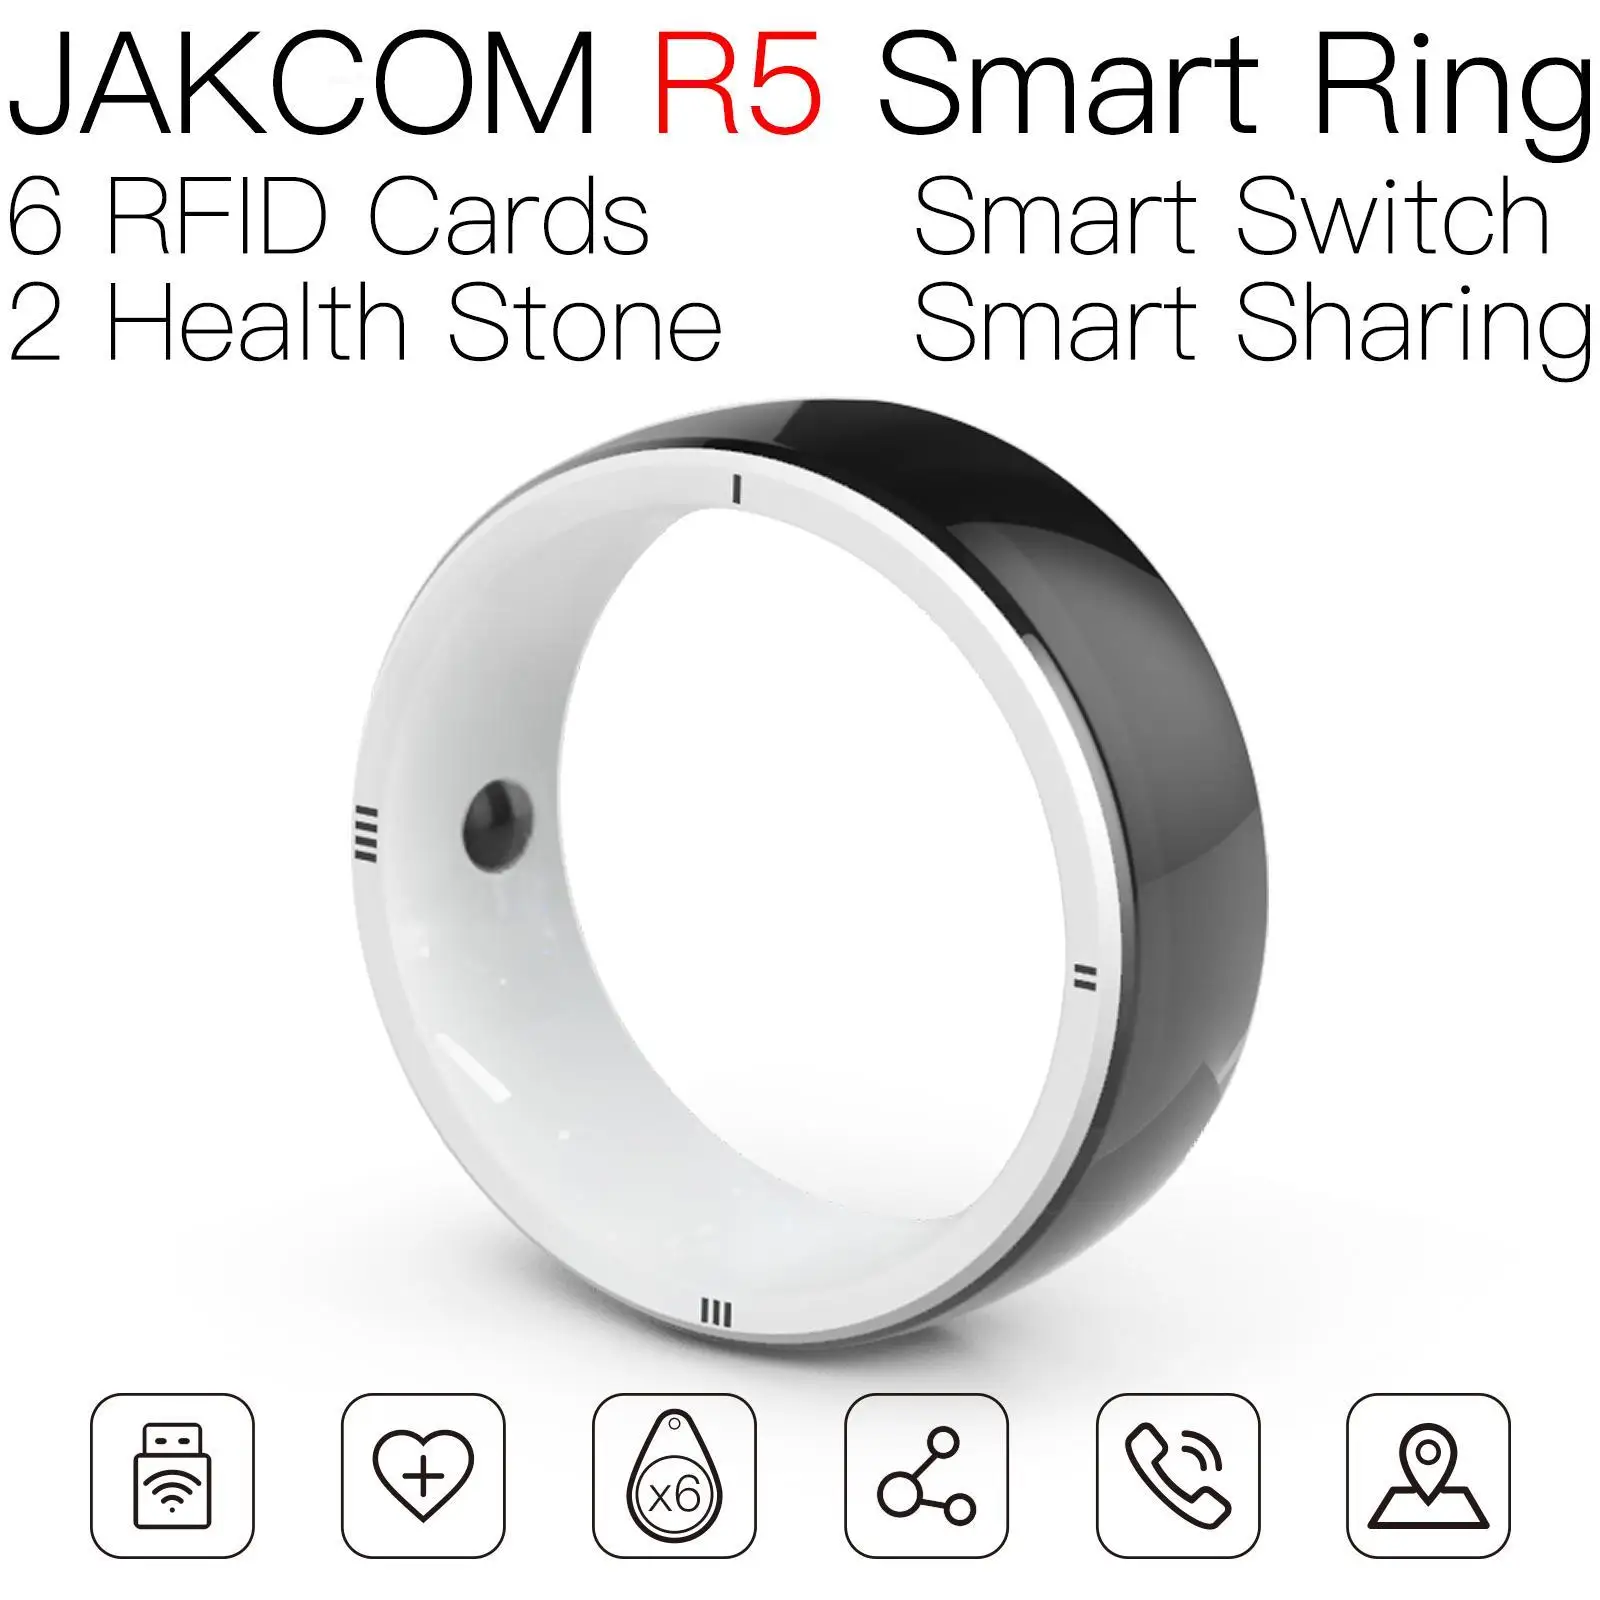 JAKCOM R5 Smart Ring Newer than smartband band 4 ego ce4 men lucky mafam heater 2 sanlepus smart